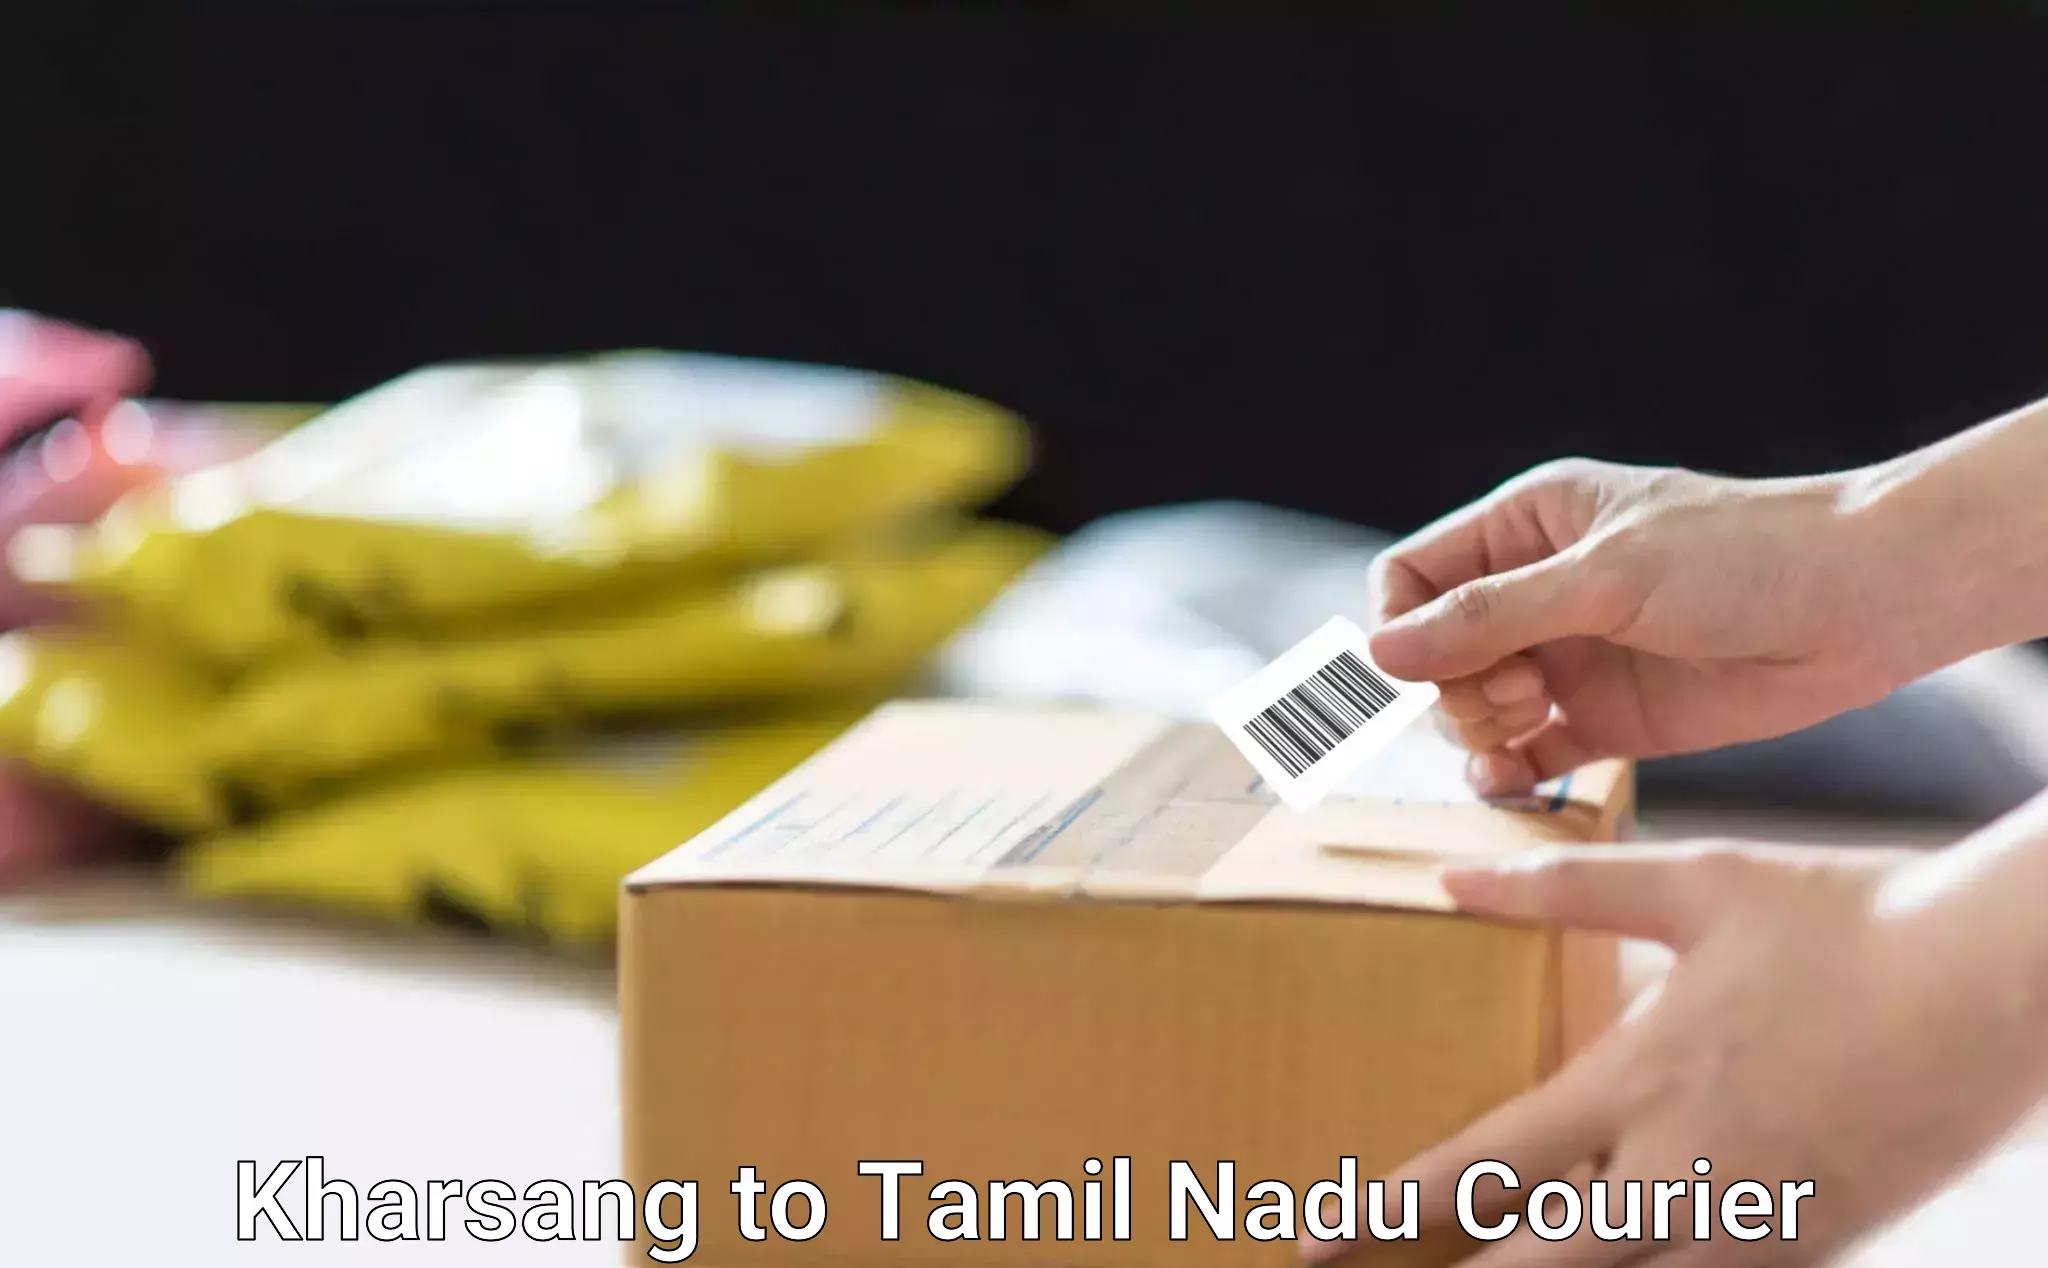 Quick booking process Kharsang to Tamil Nadu